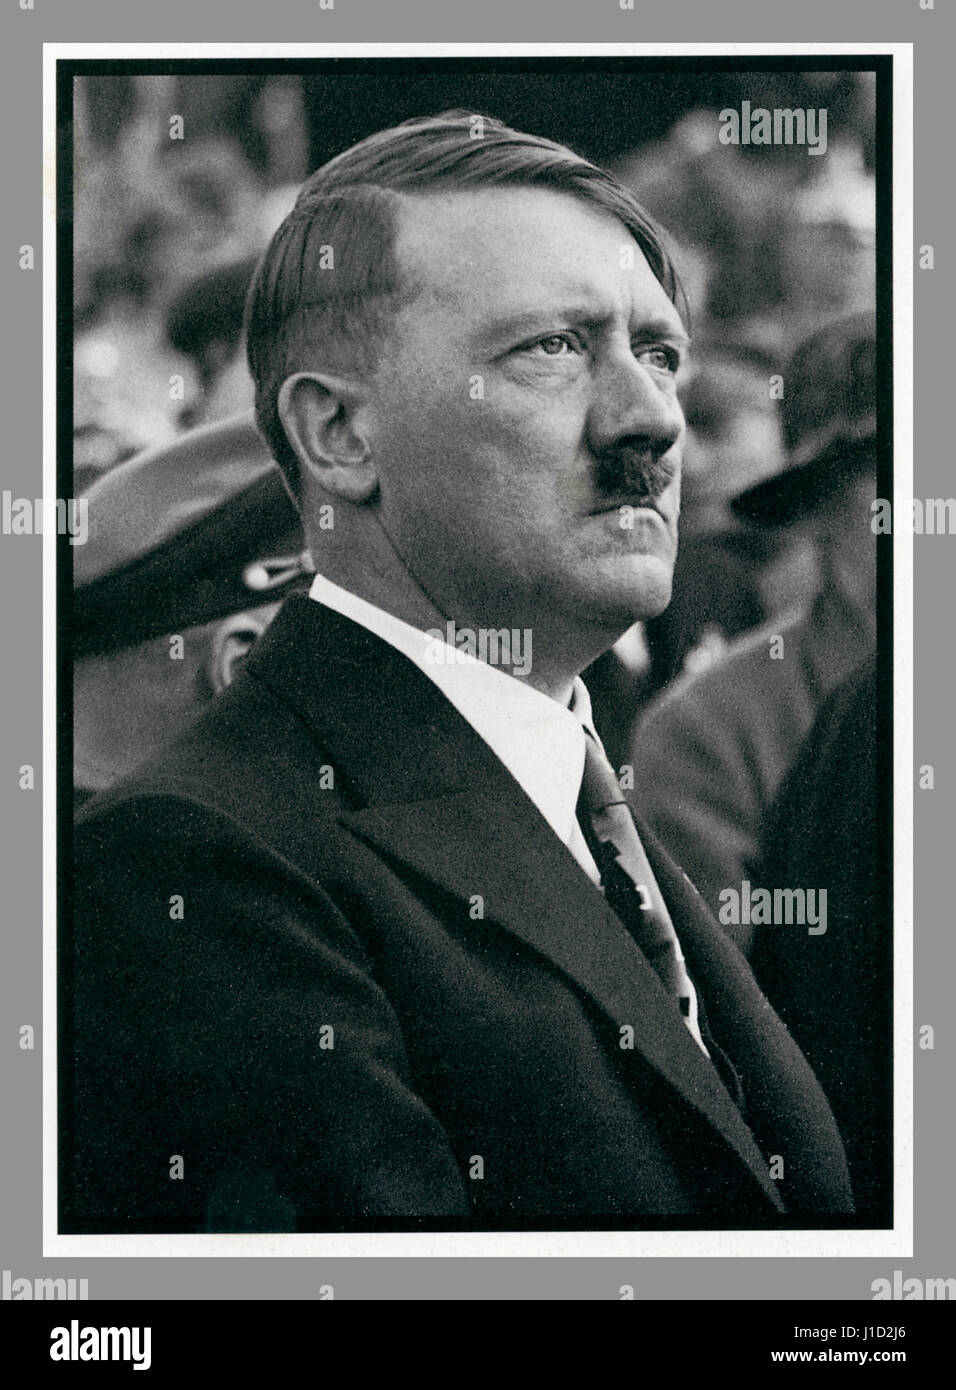 ADOLF HITLER in abbigliamento civile 1930 's reportage propaganda immagine di Adolf Hitler in un partito nazista Rally indossare abiti civili Foto Stock